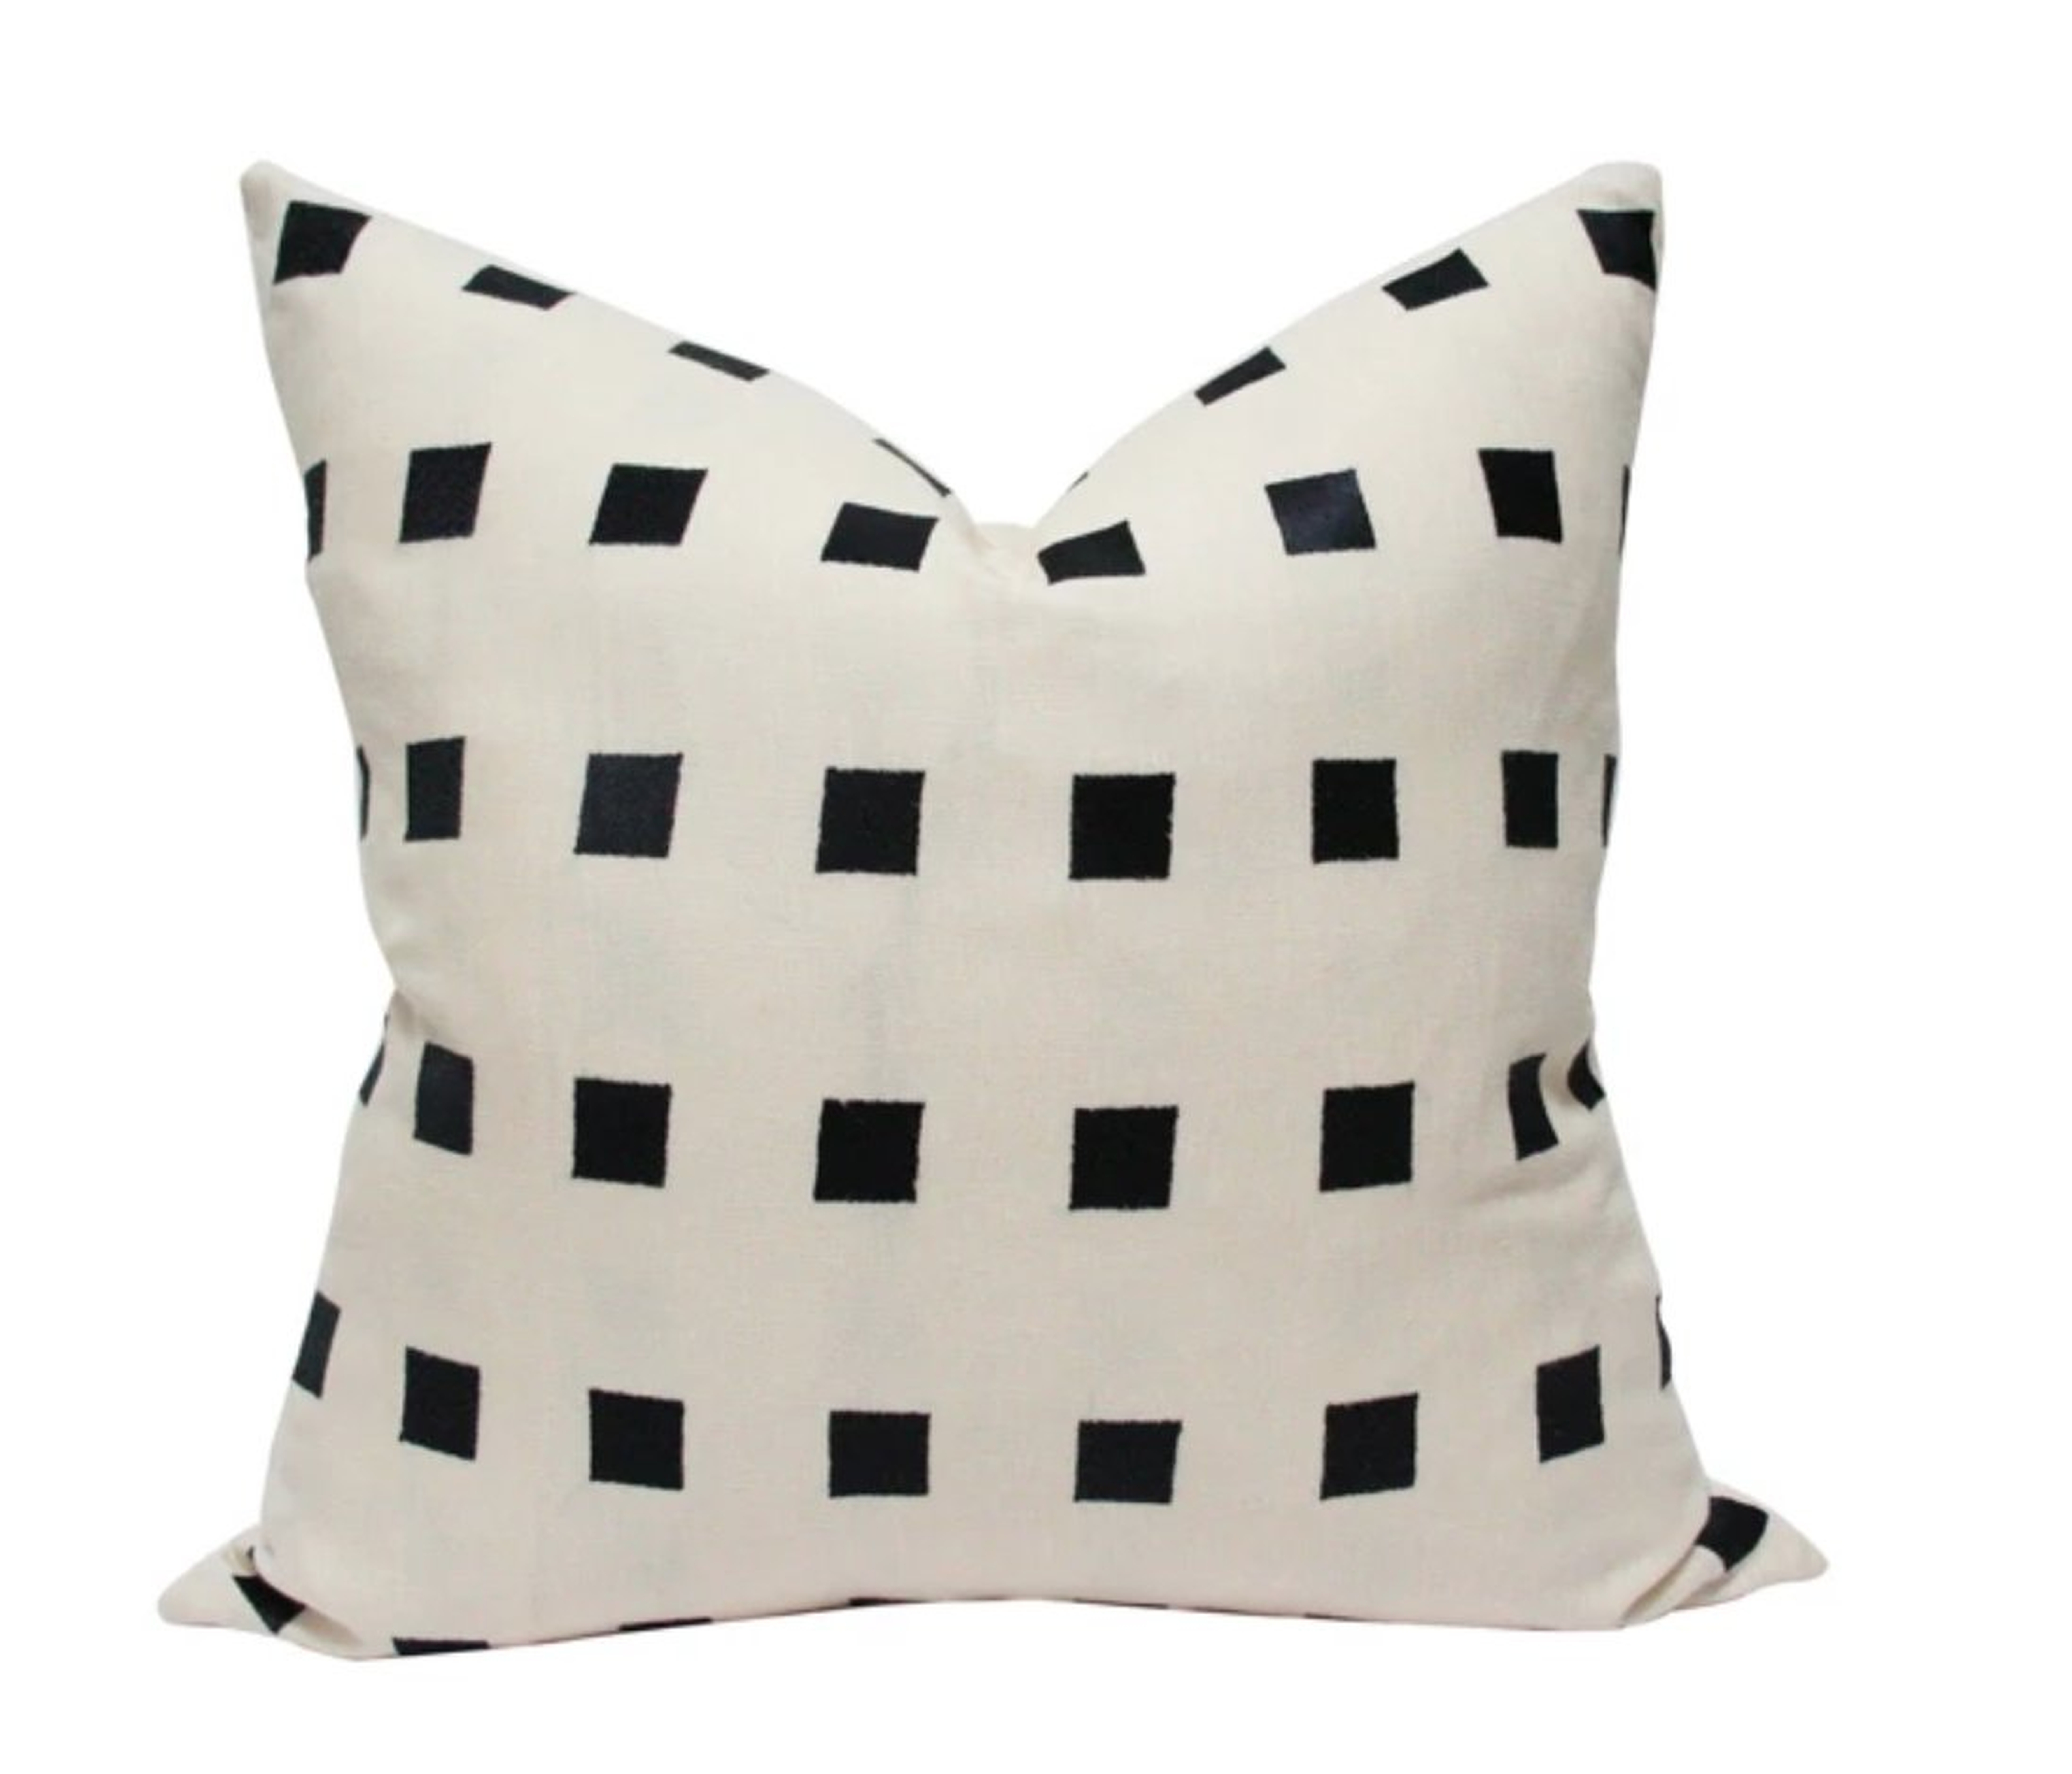 Chalet Pillow, Cream & Black, 18" x 18" - Arianna Belle